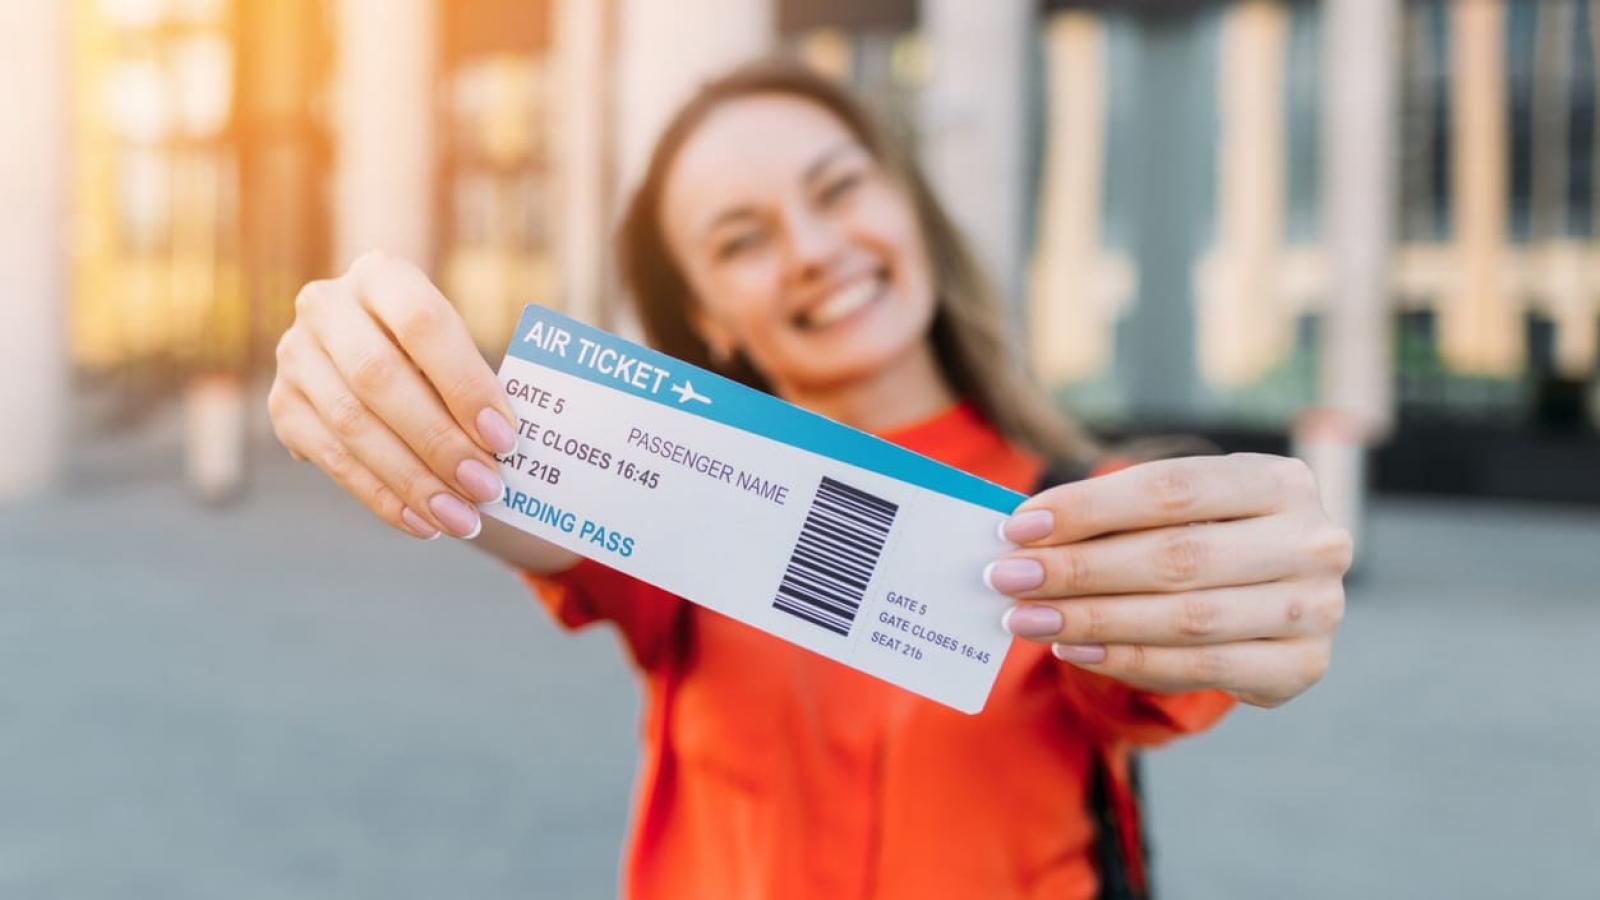 В аэропорту можно купить билет на самолет. Билет в руке. Авиабилеты в руках. Девушка с билетом в руках. Девушка держит билет.